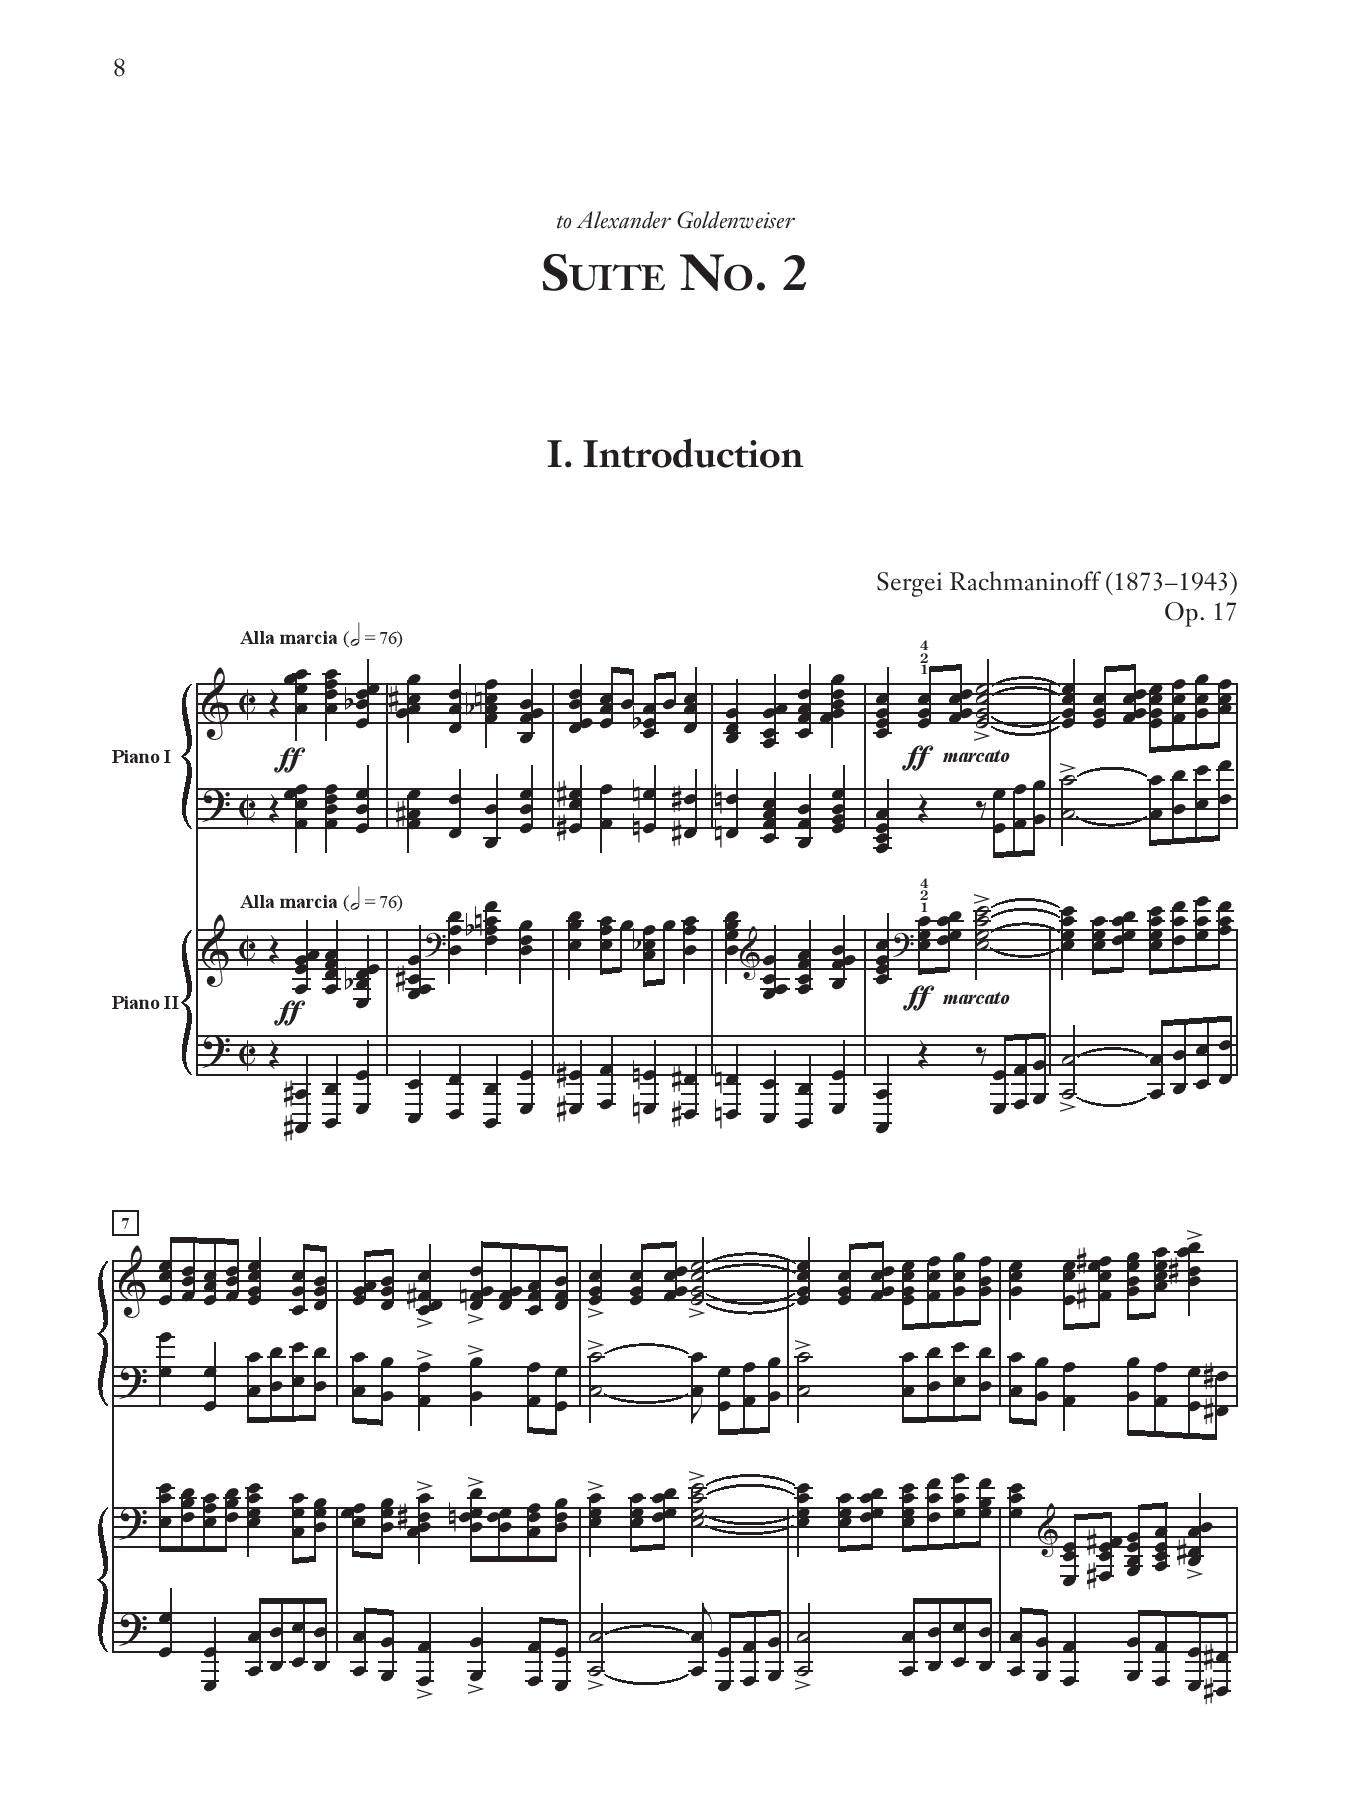 Rachmaninoff: Suite No. 2 Op. 17